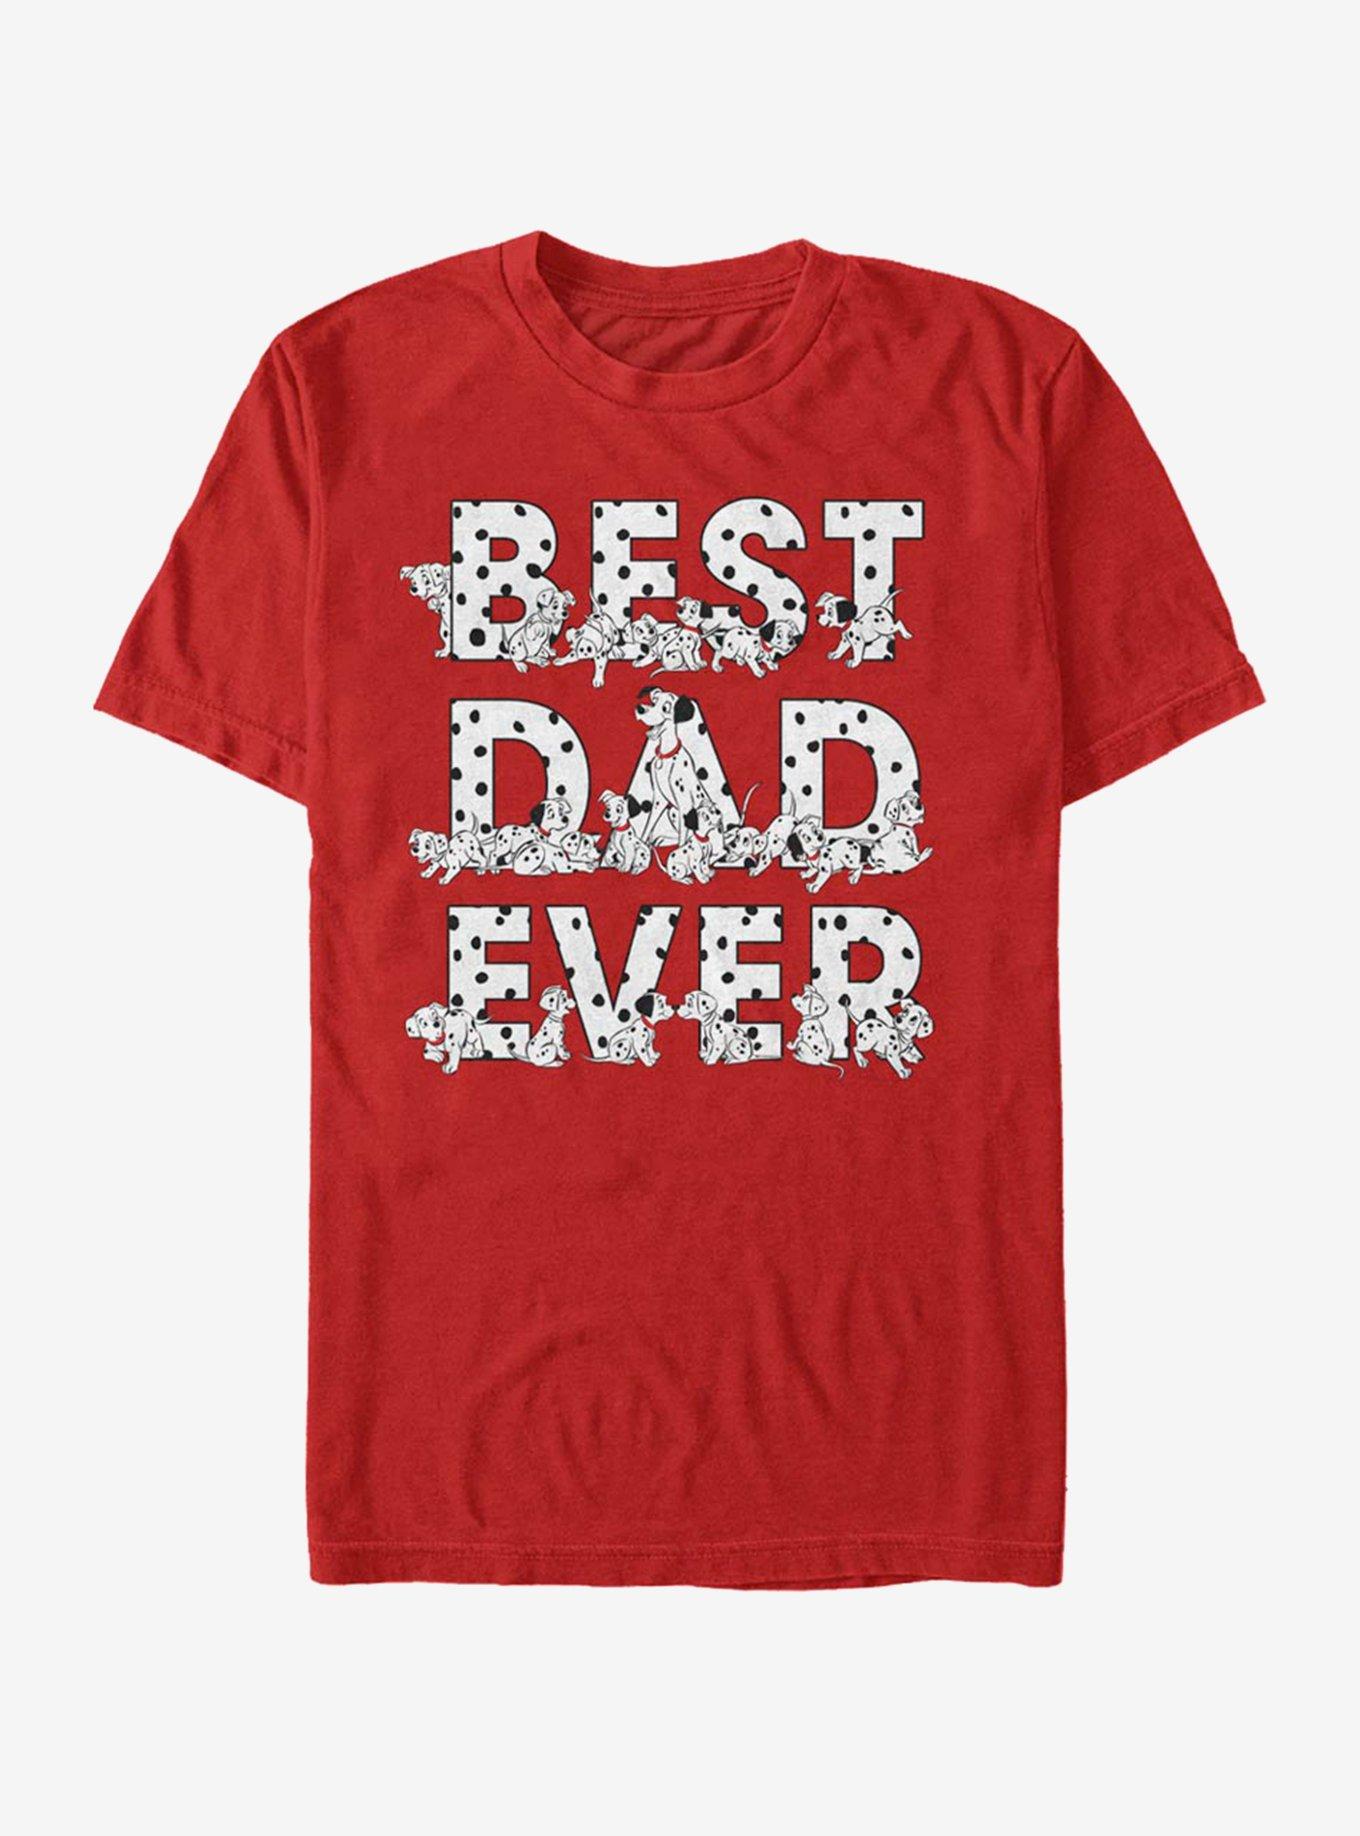 Disney 101 Dalmatians Pongo Best Dad Ever T-Shirt, RED, hi-res